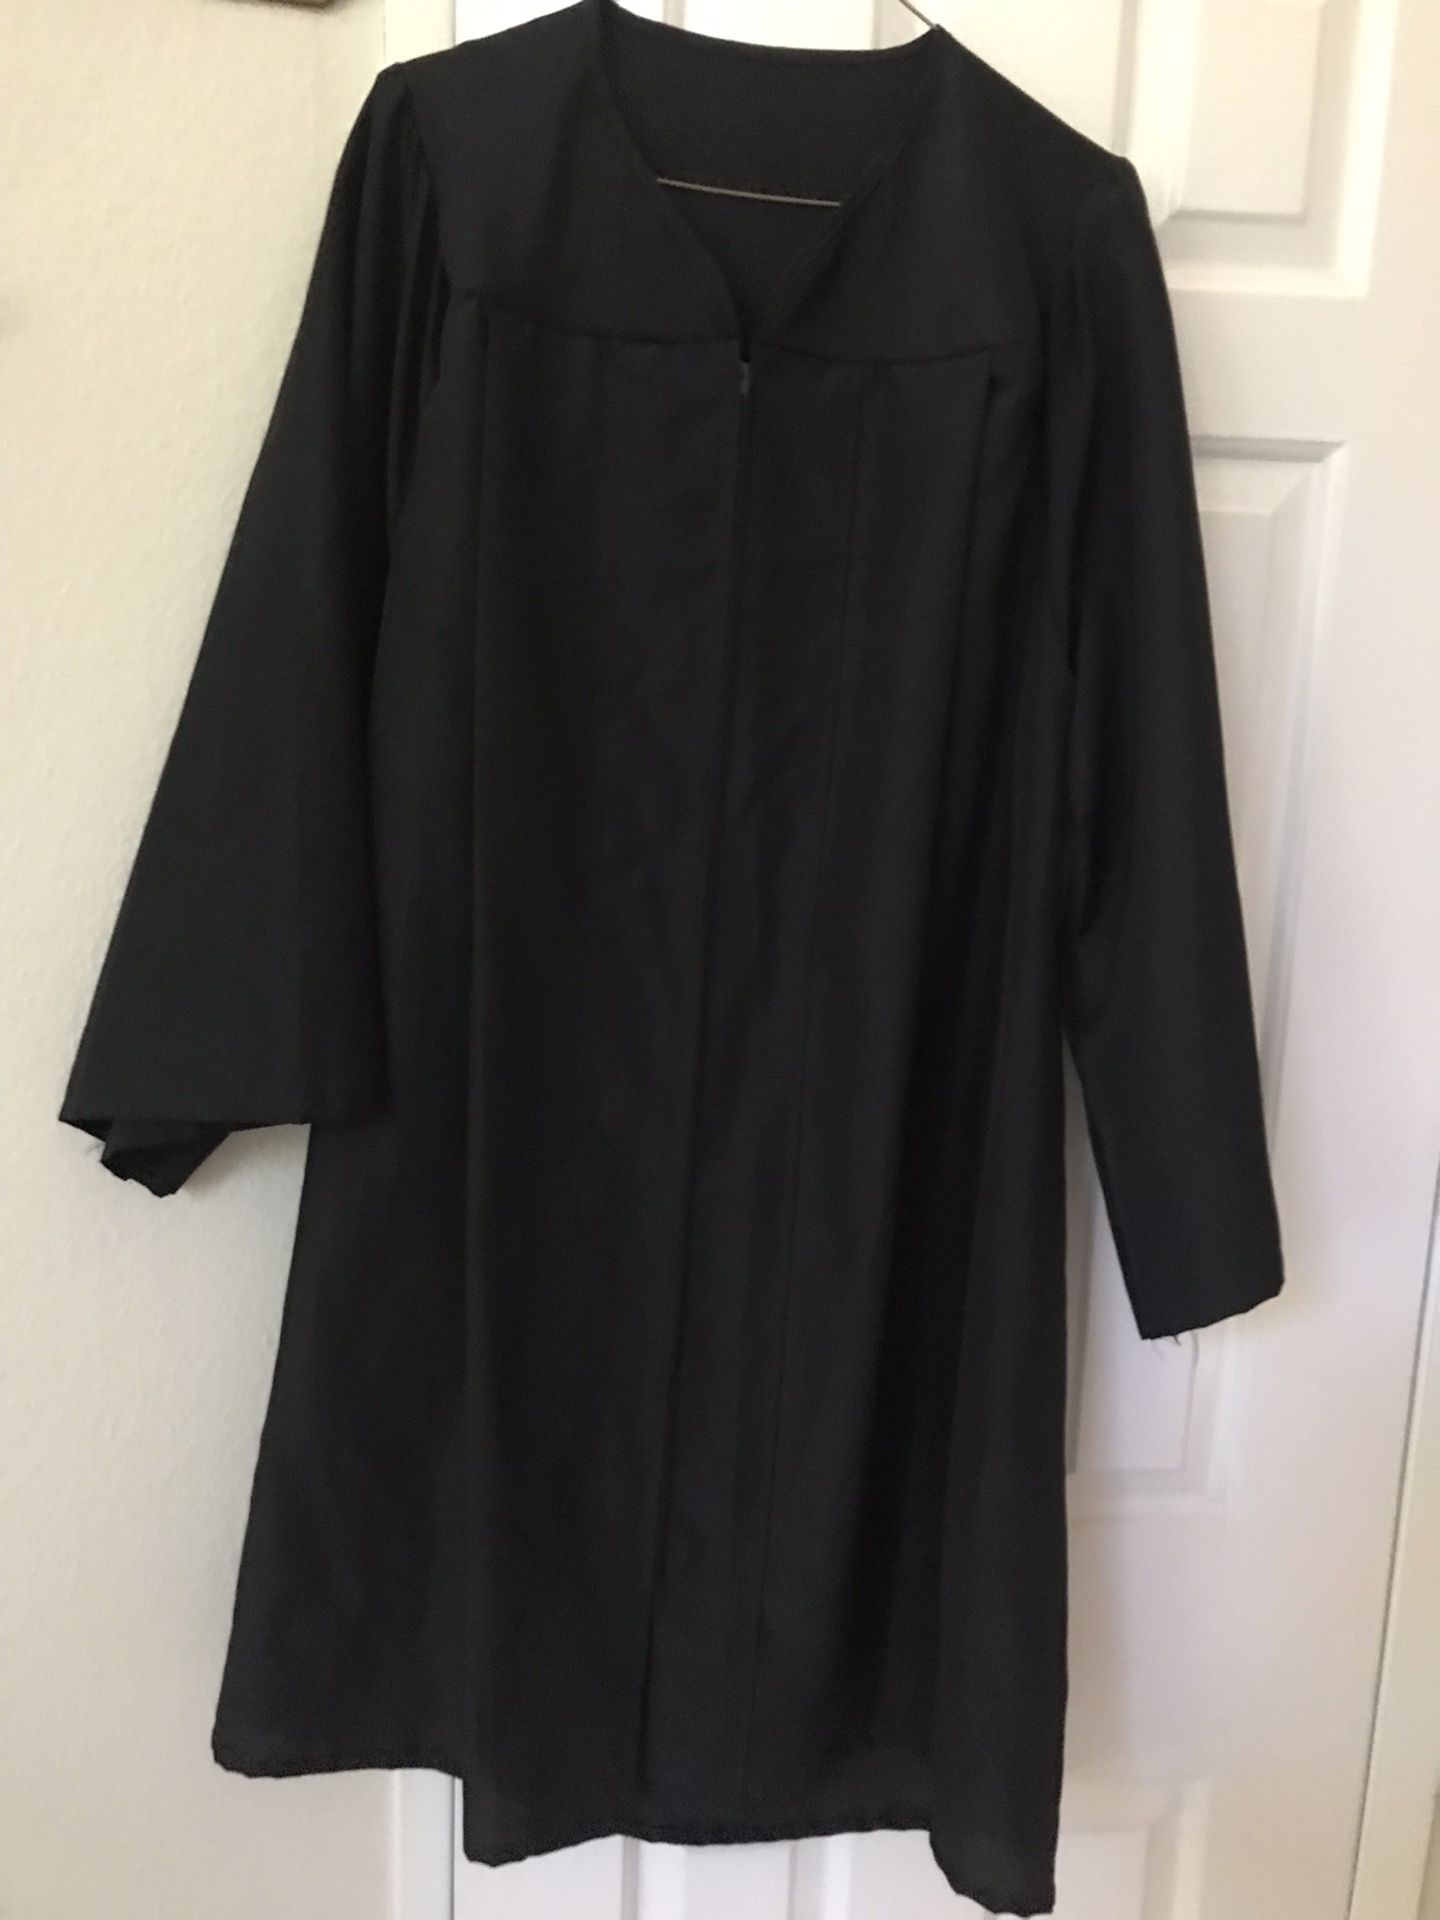 Black Matte Graduation Cap & Gown, 5’1”-5’3”